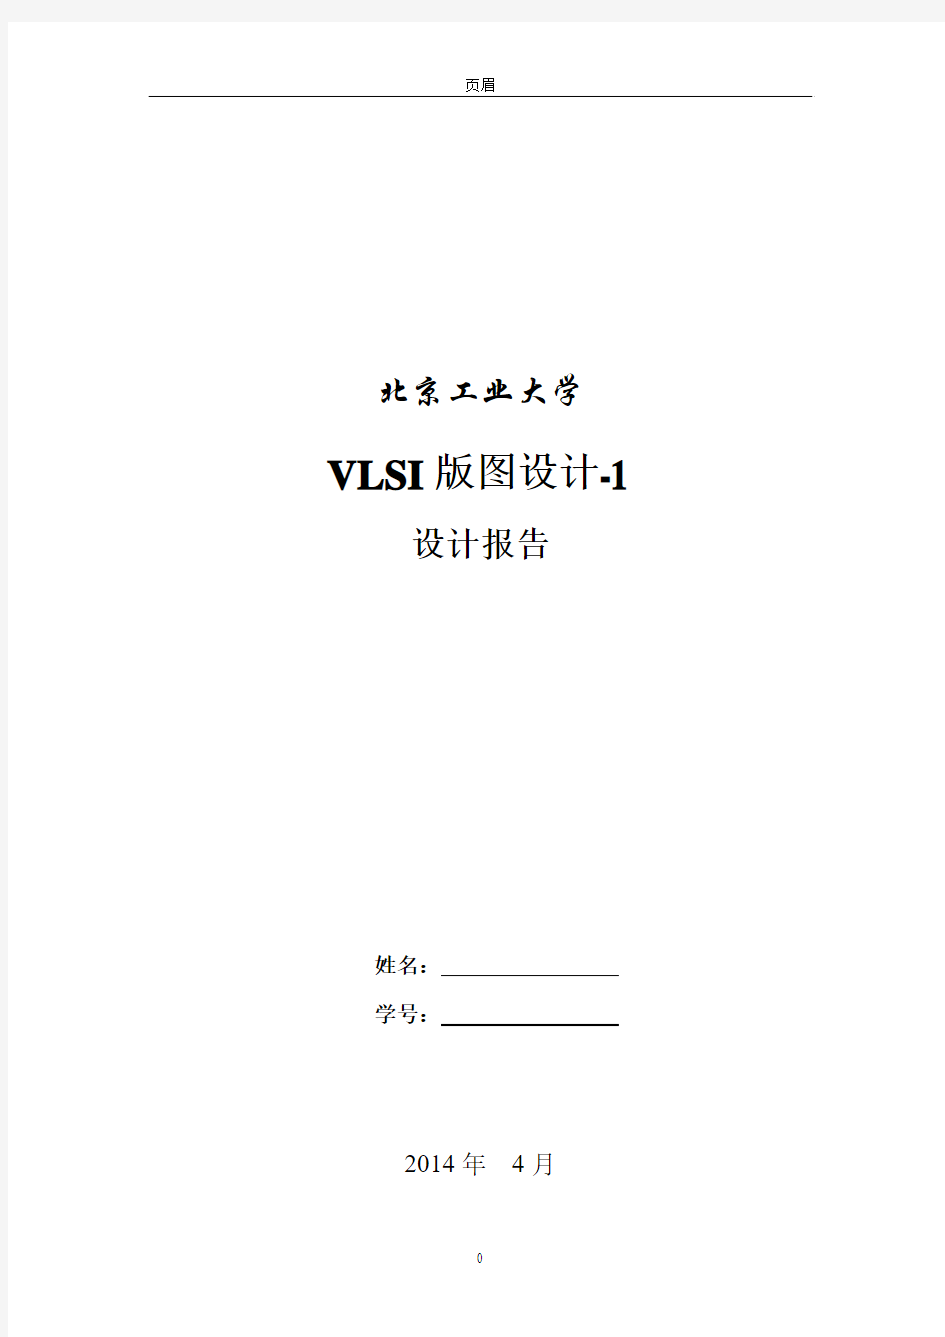 VLSI版图设计报告